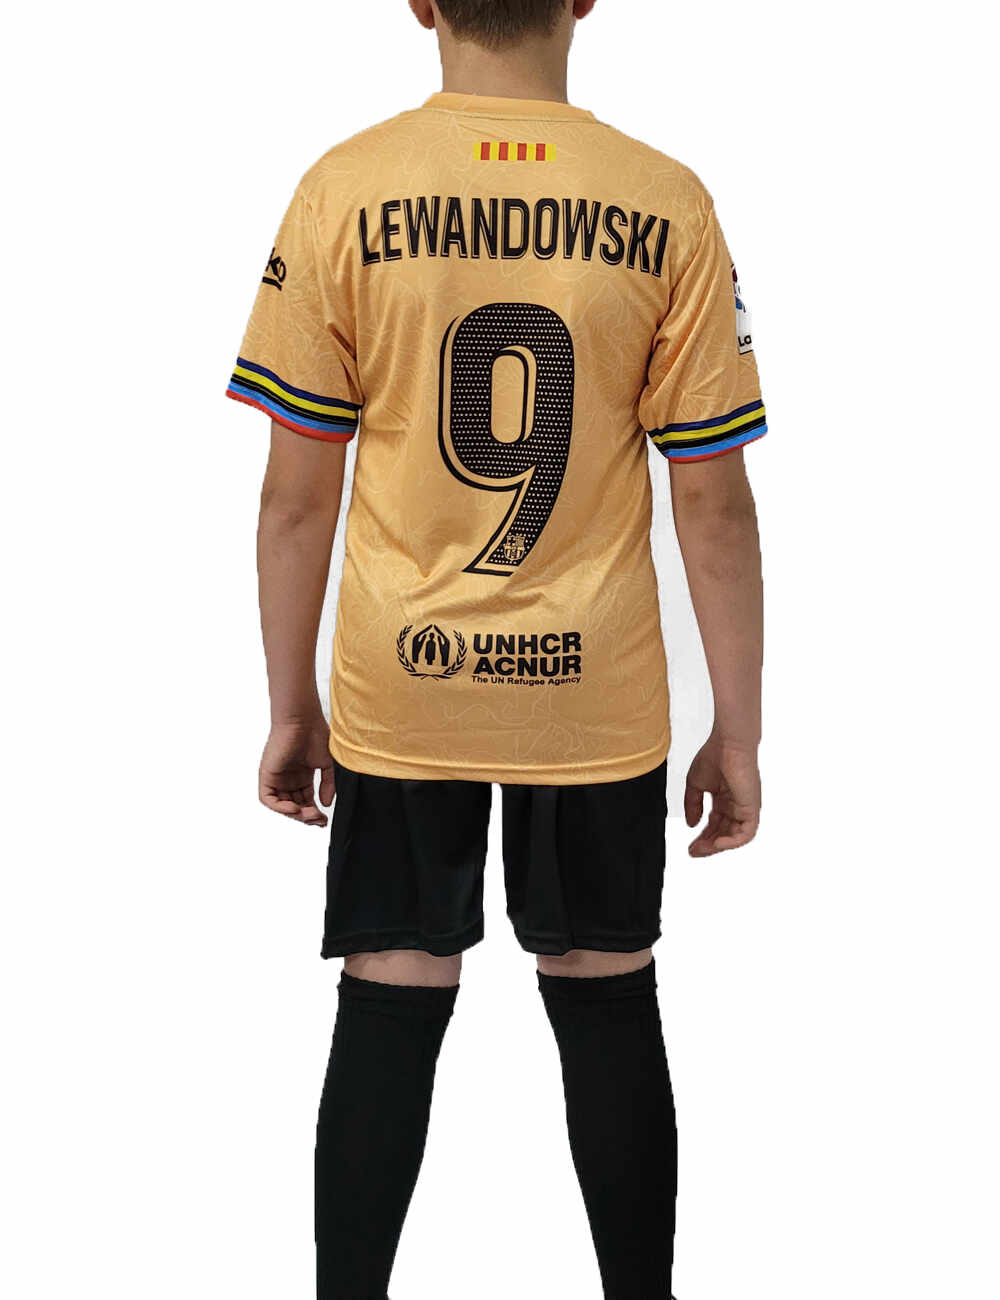 Echipament Copii Barca 2023 - Lewandowski - NU